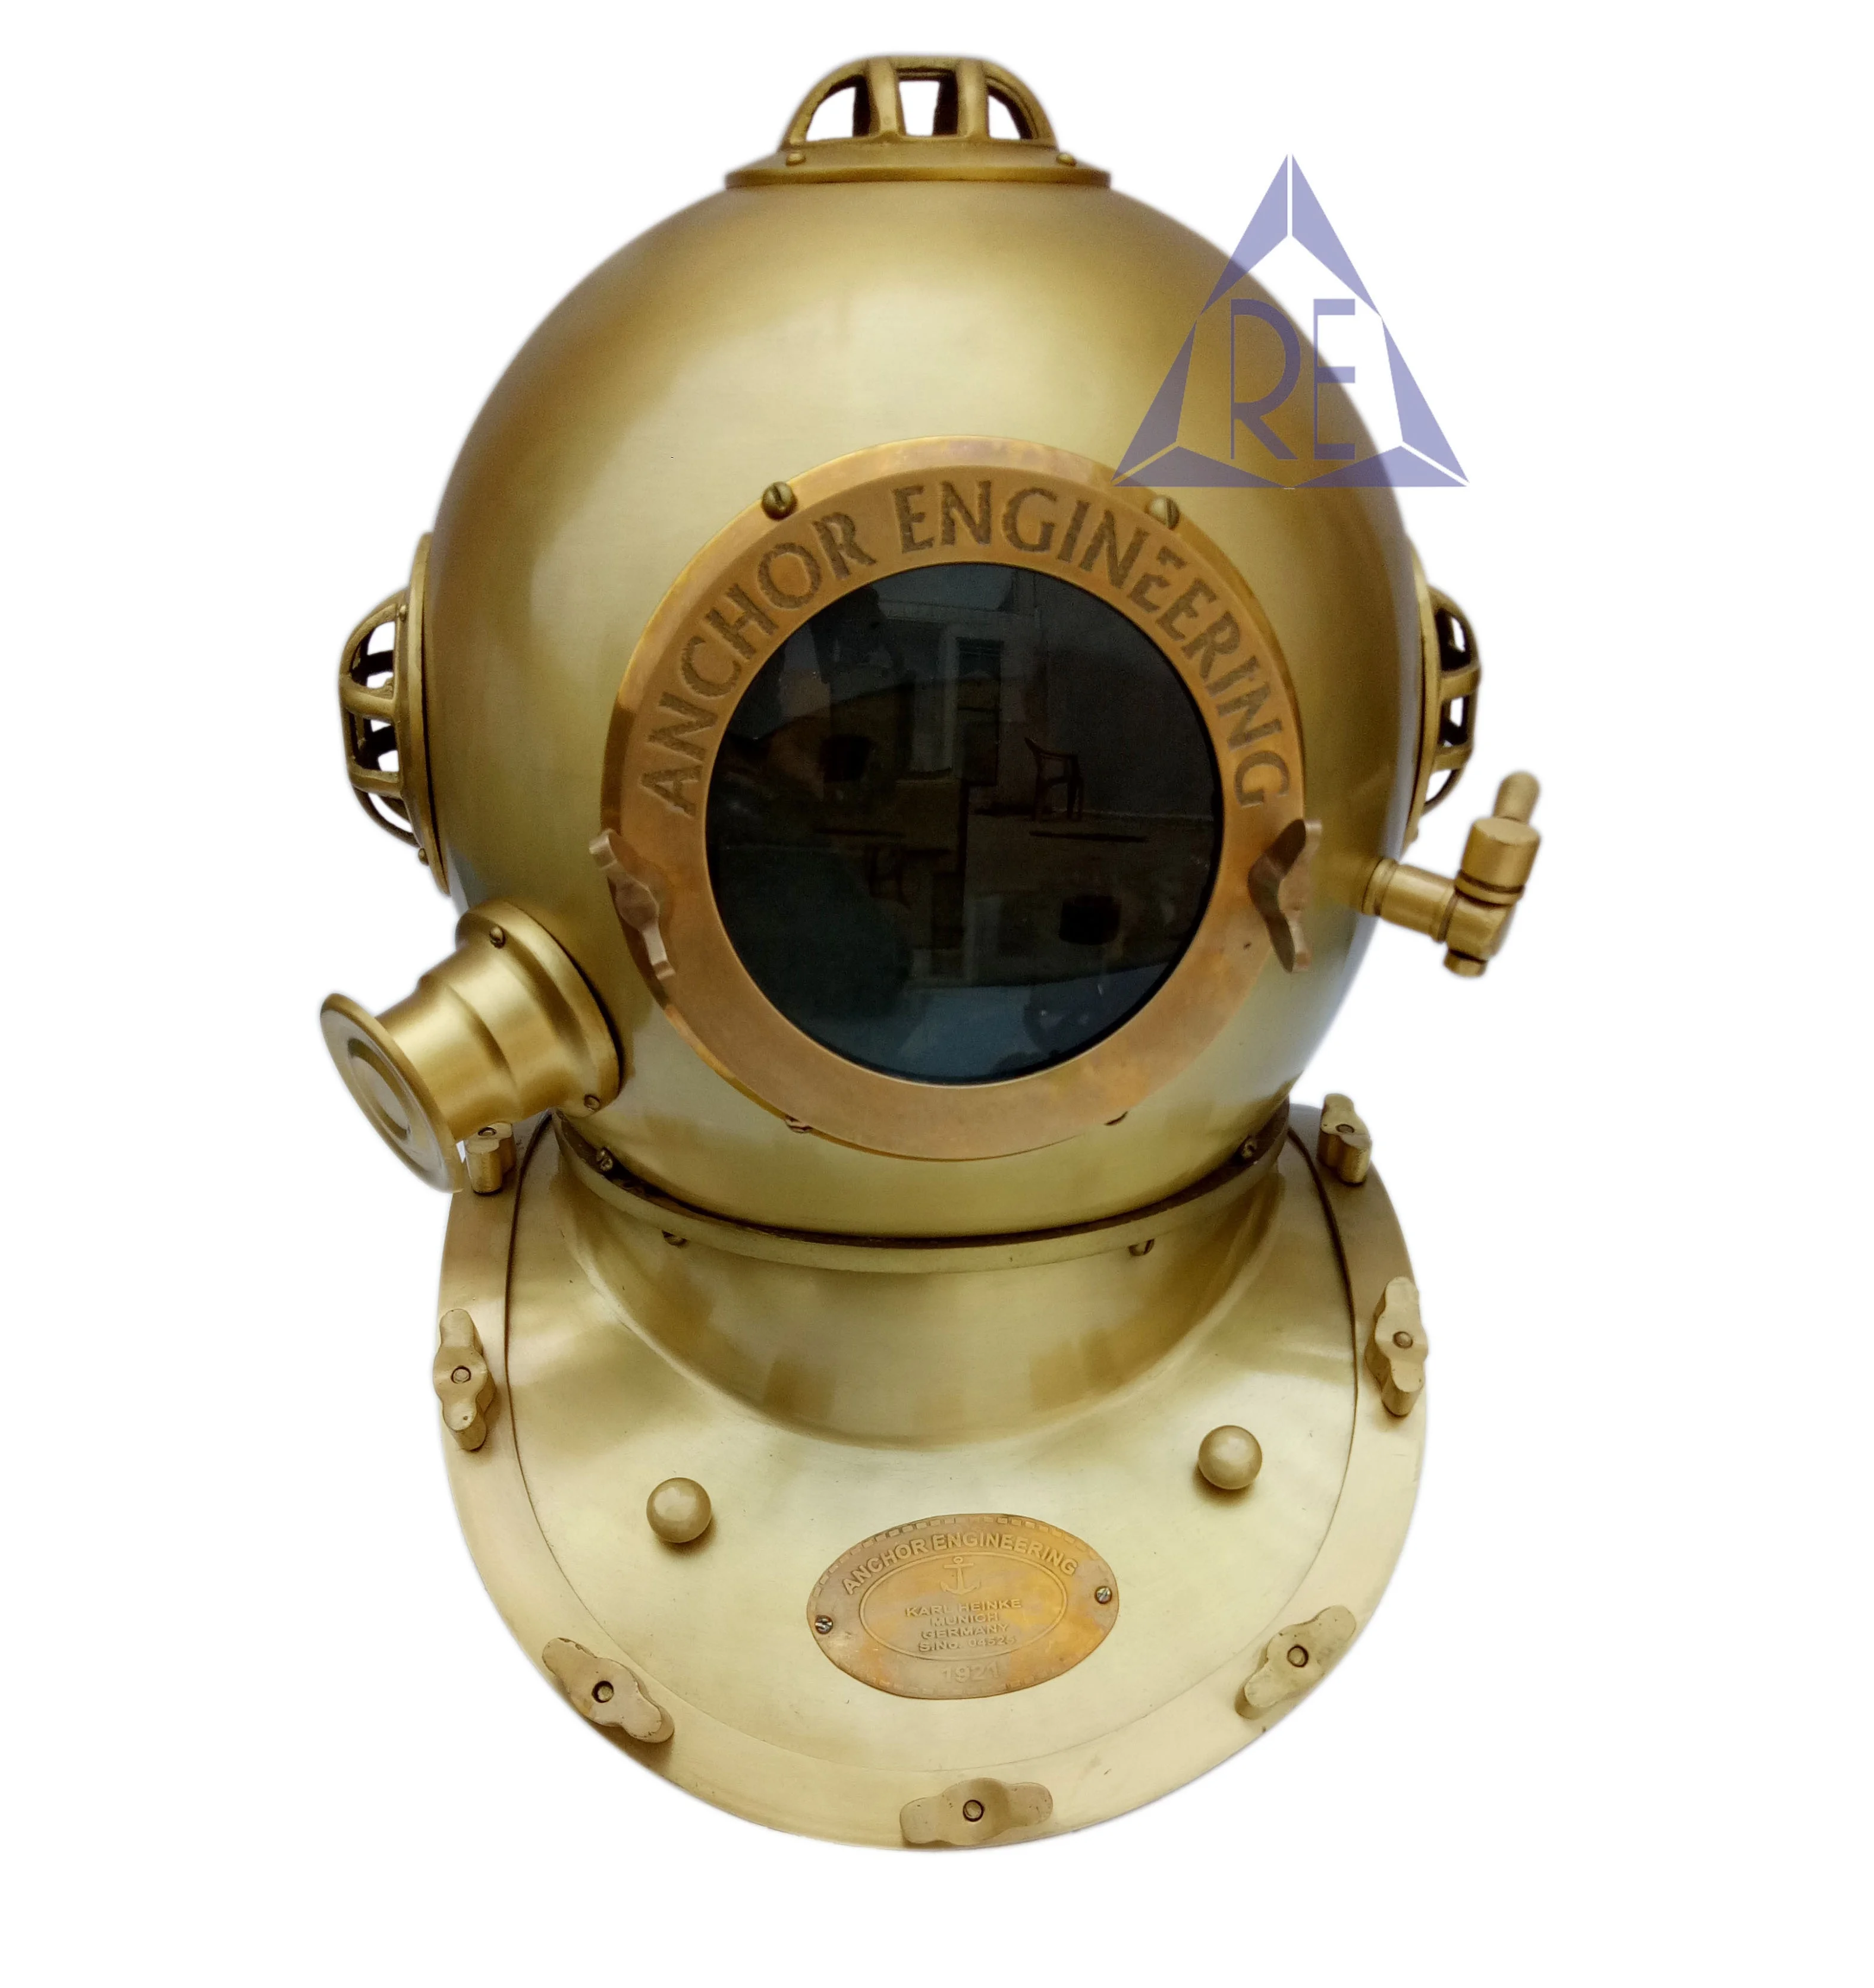 Brass Boston Diving Helmet Divers Antique Scuba Diving Helmet Collectible Decor 